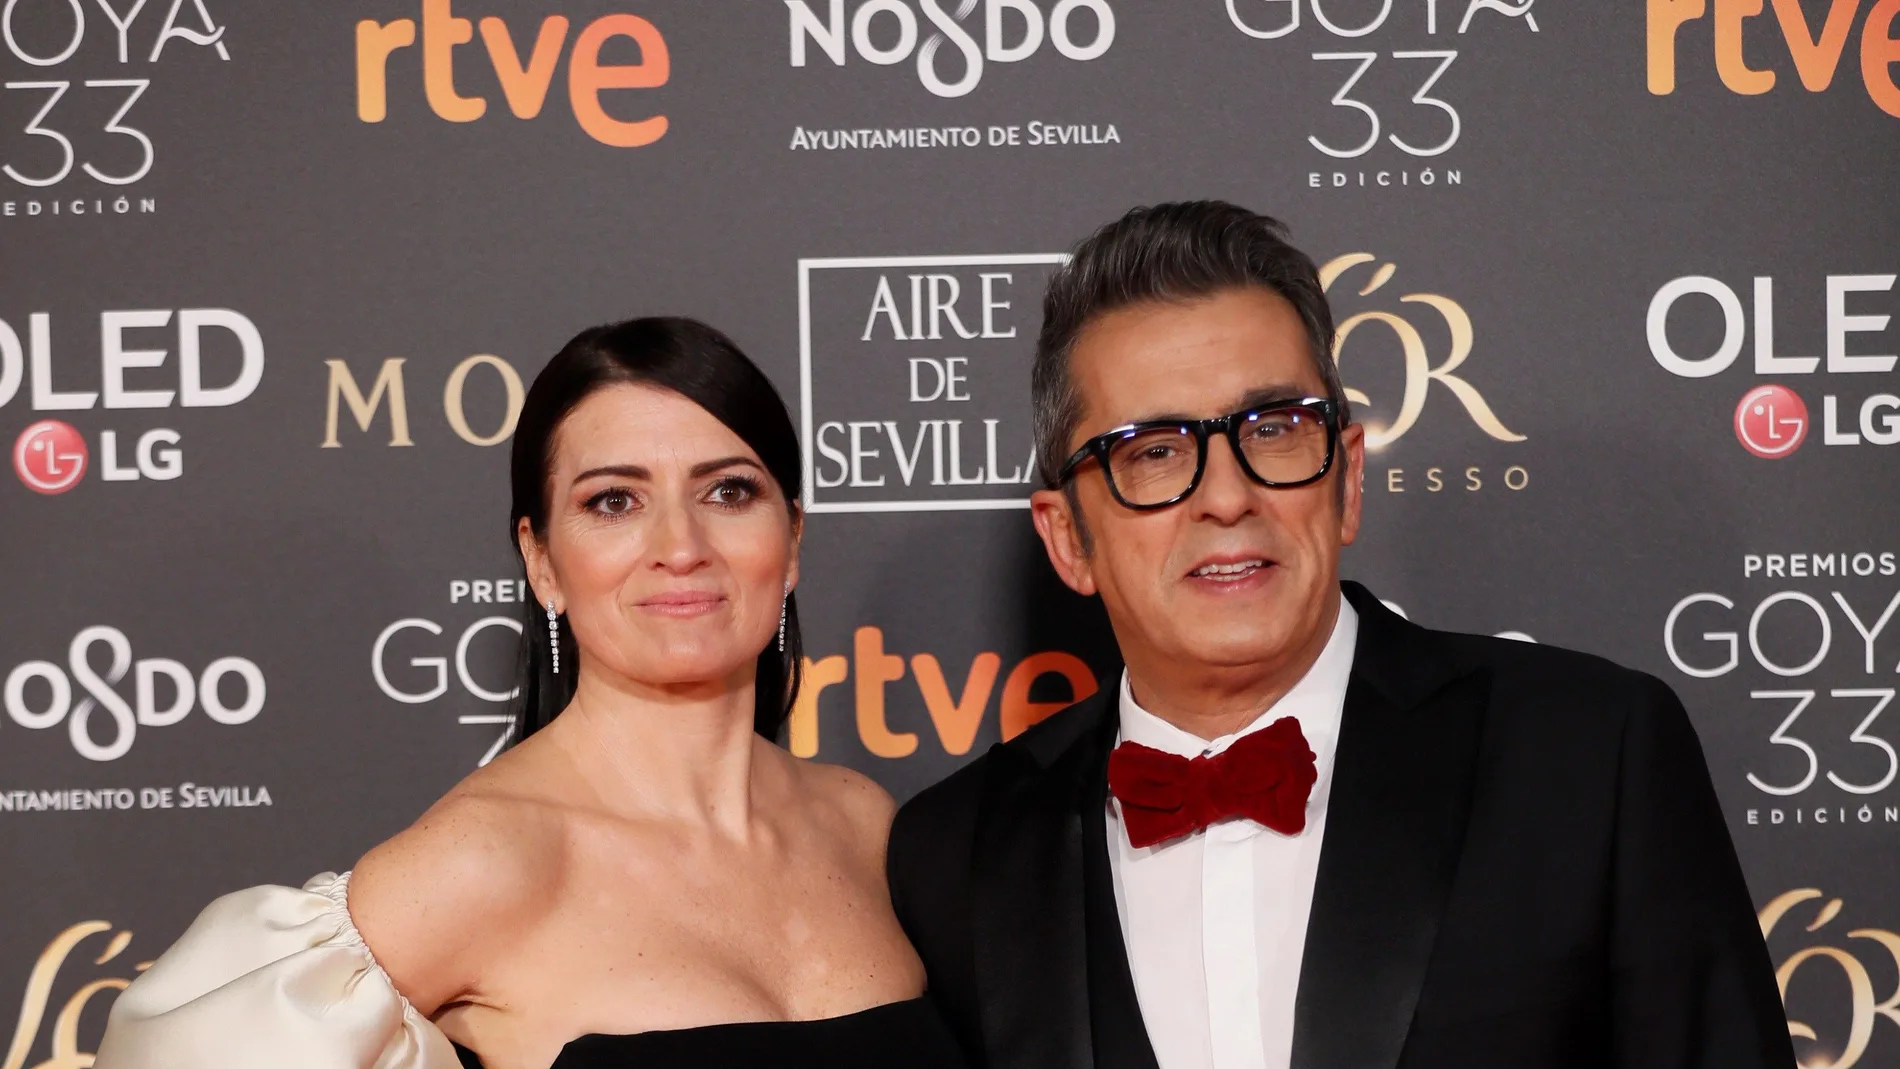 Los presentadores de los Premios Goya 2019, Silvia Abril y Andreu Buenafuente